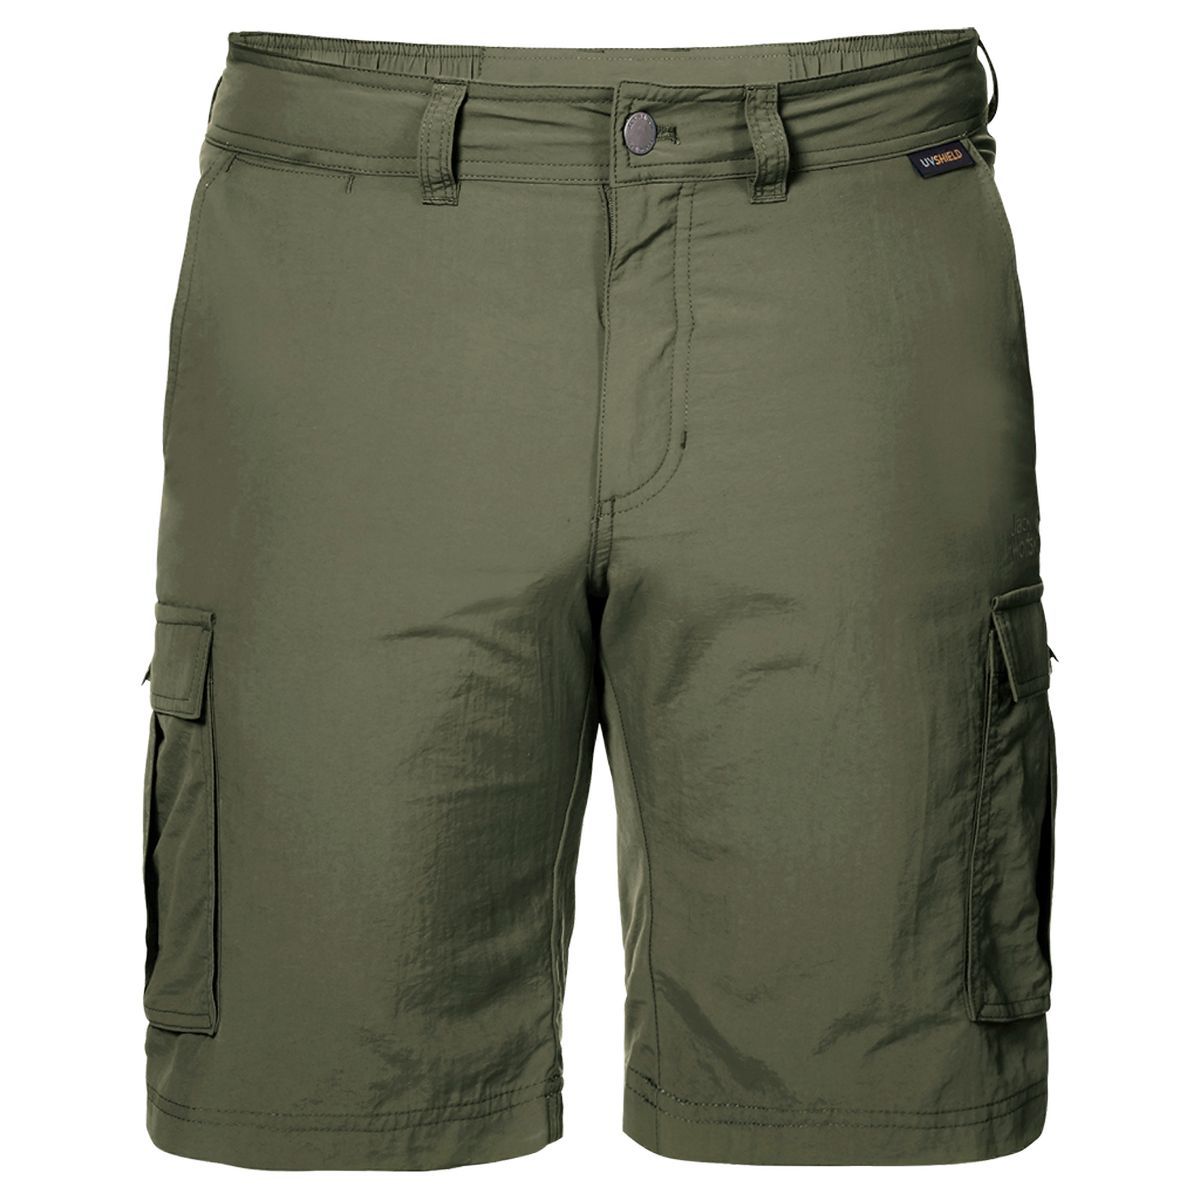   Jack Wolfskin Canyon Cargo Shorts, : . 1504201-5052.  54